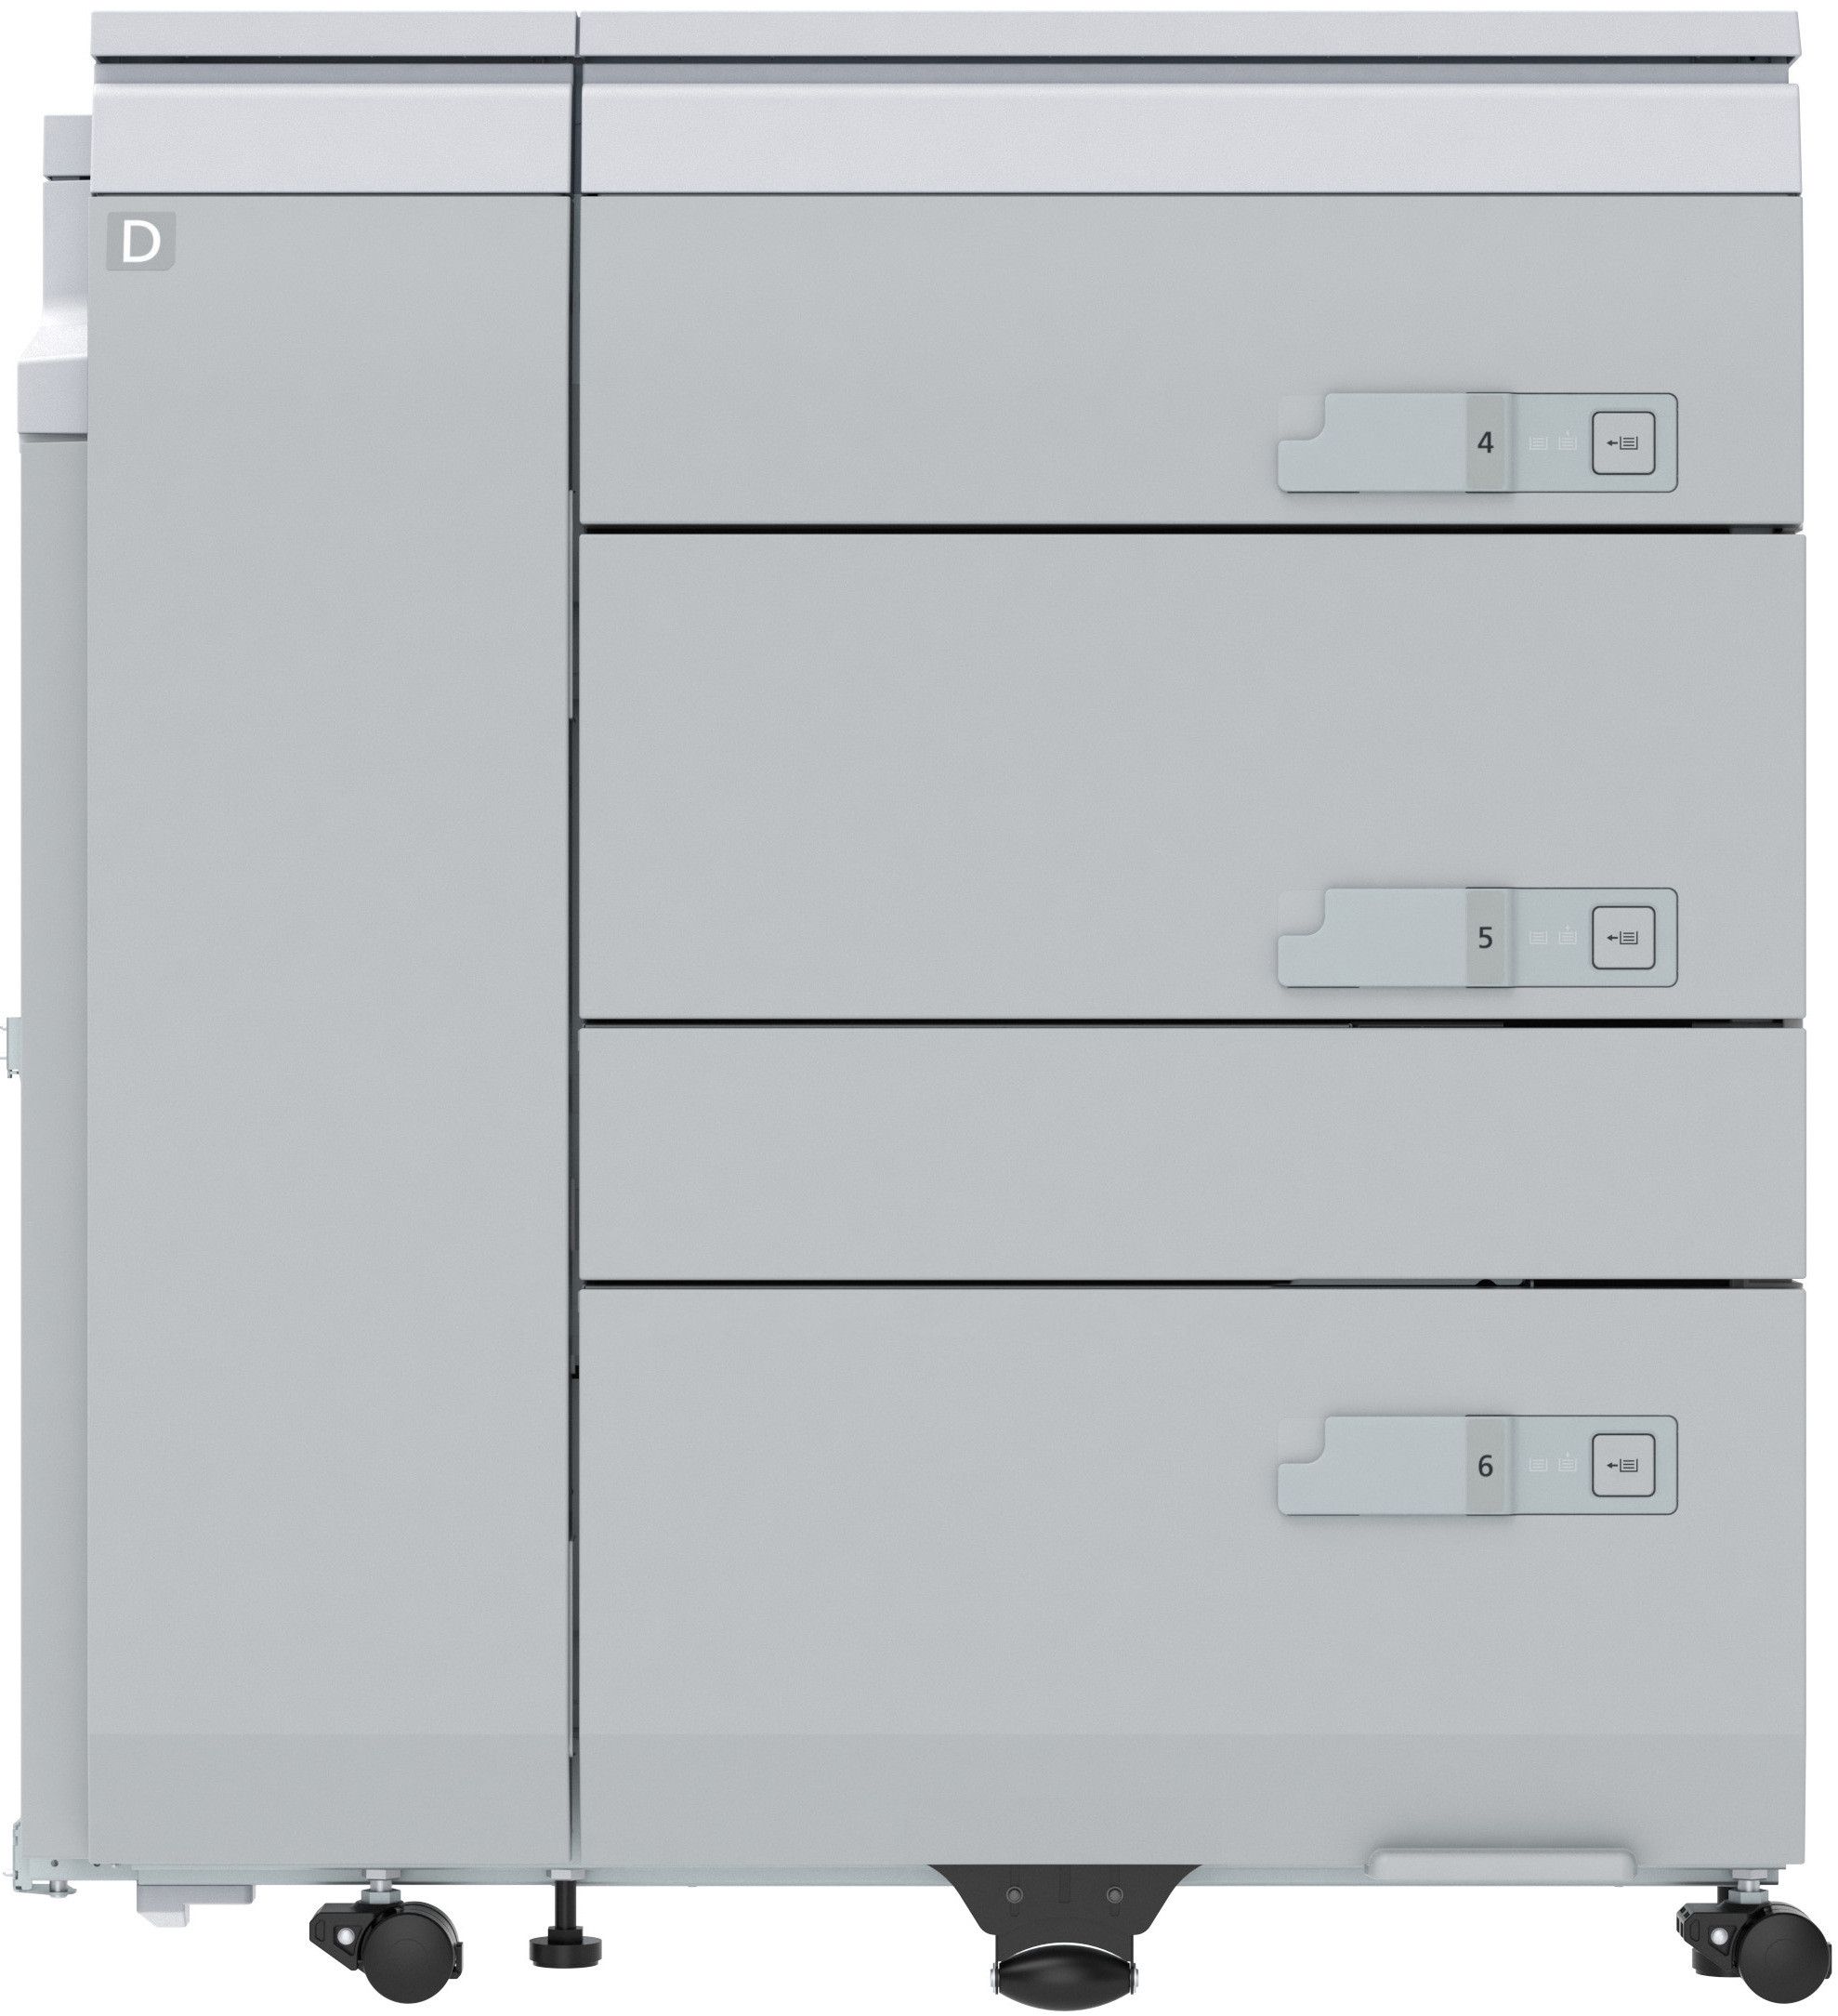 Canon многокассетная стойка для бумаги Multi-Drawer Paper Deck-D1 для imagePRESS C910 Series, 5000 листов